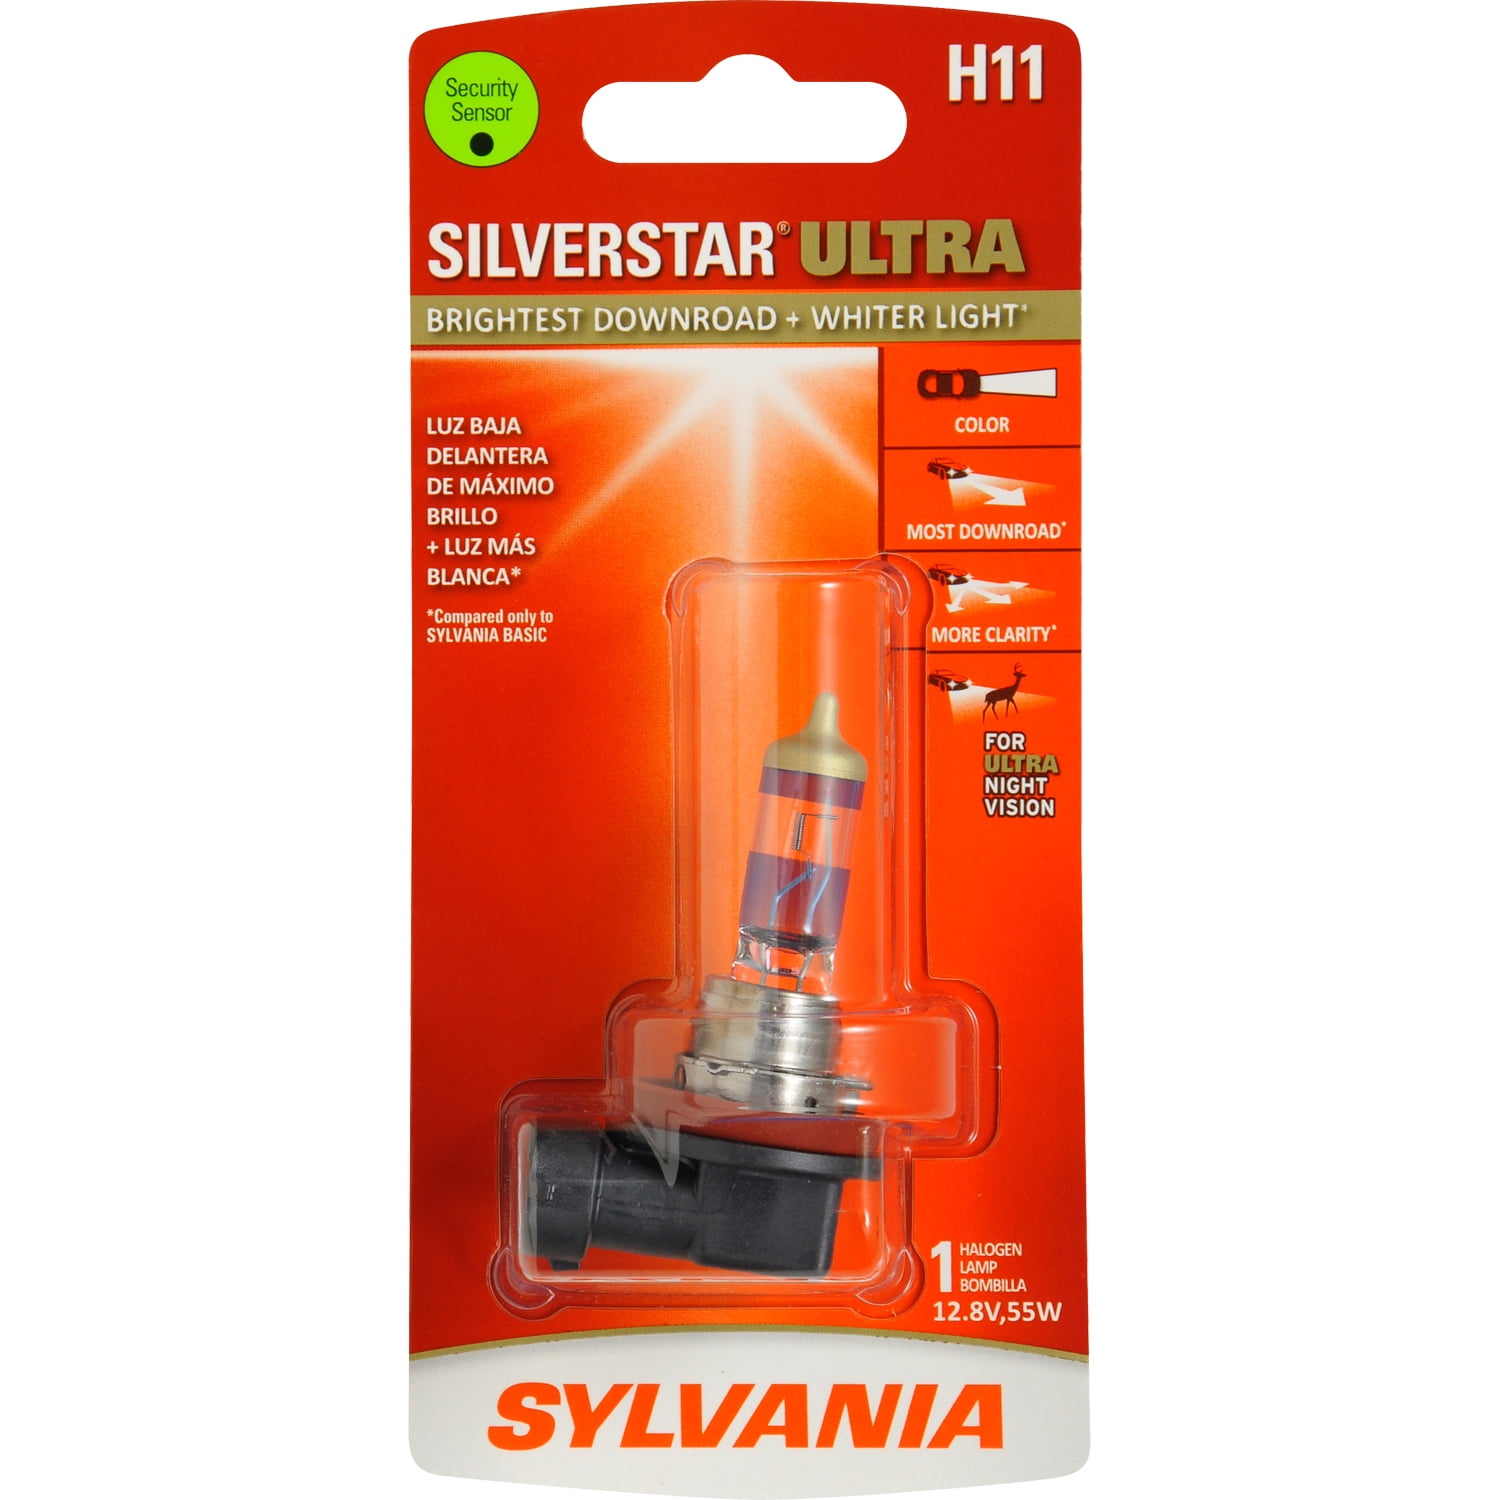 SYLVANIA Silverstar Ultra H11 55W Zwei Glühbirnen Kopf Licht Niedrig Träger Plug 